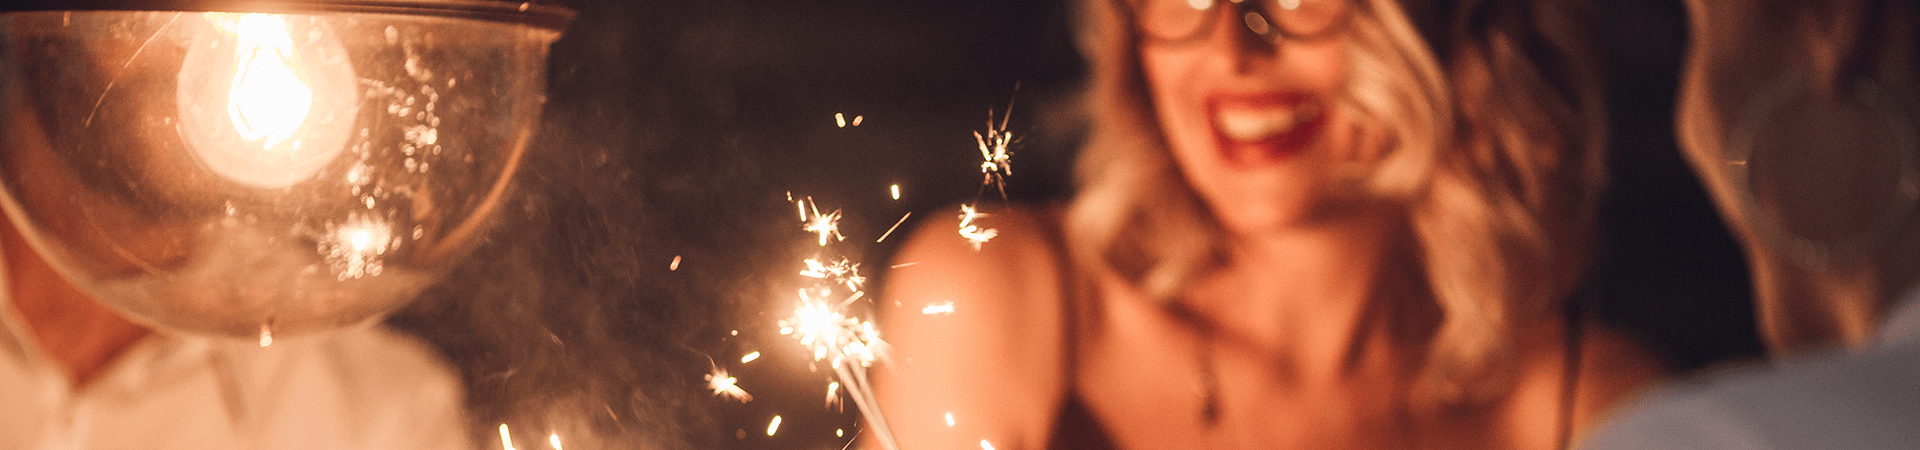 Une femme sourit en regardant les éteincelles de bougies d'anniversaire